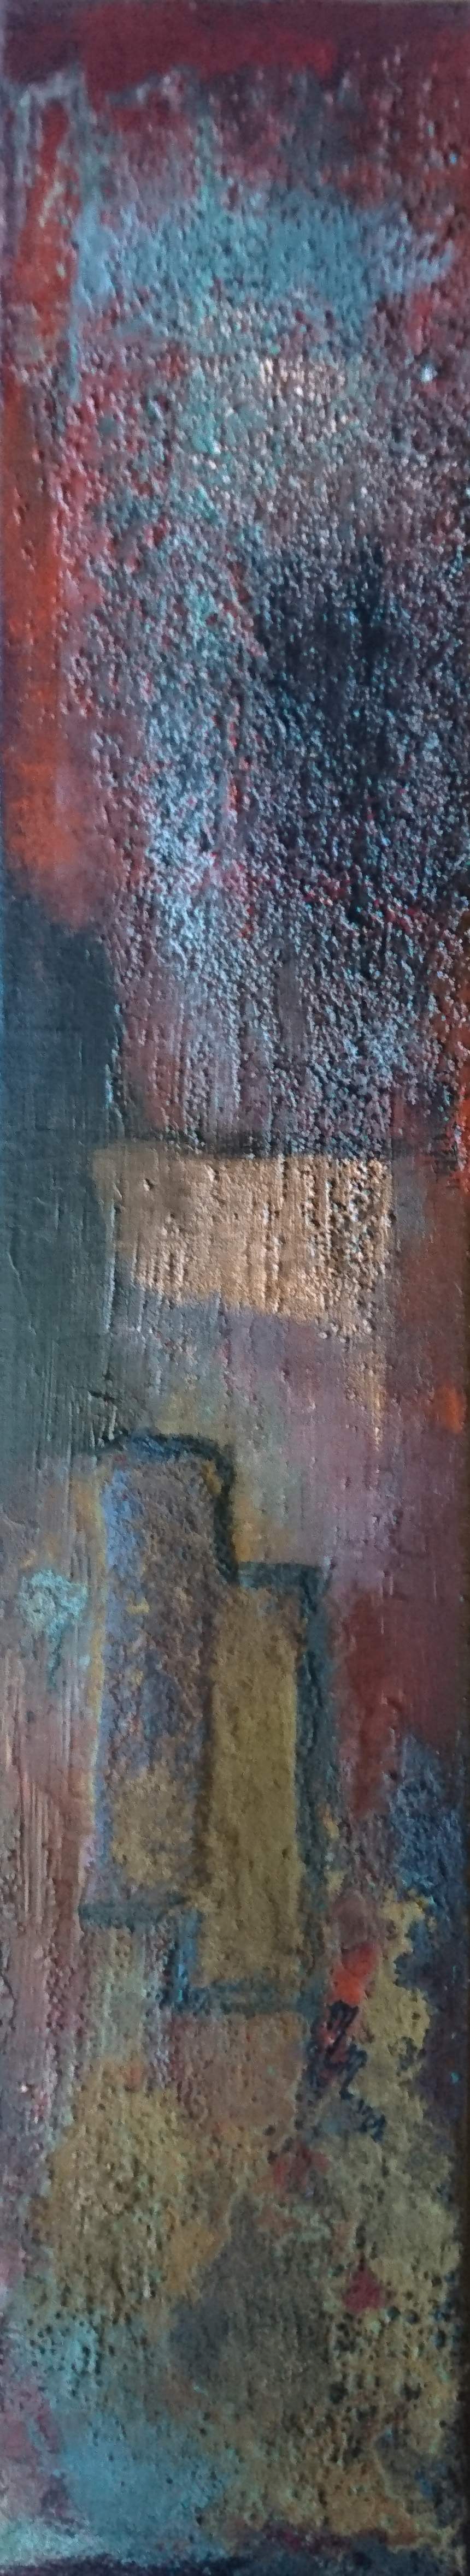 abstrakt, acryl, sand, eisenpartikel, leindwand, 10 x 50 cm